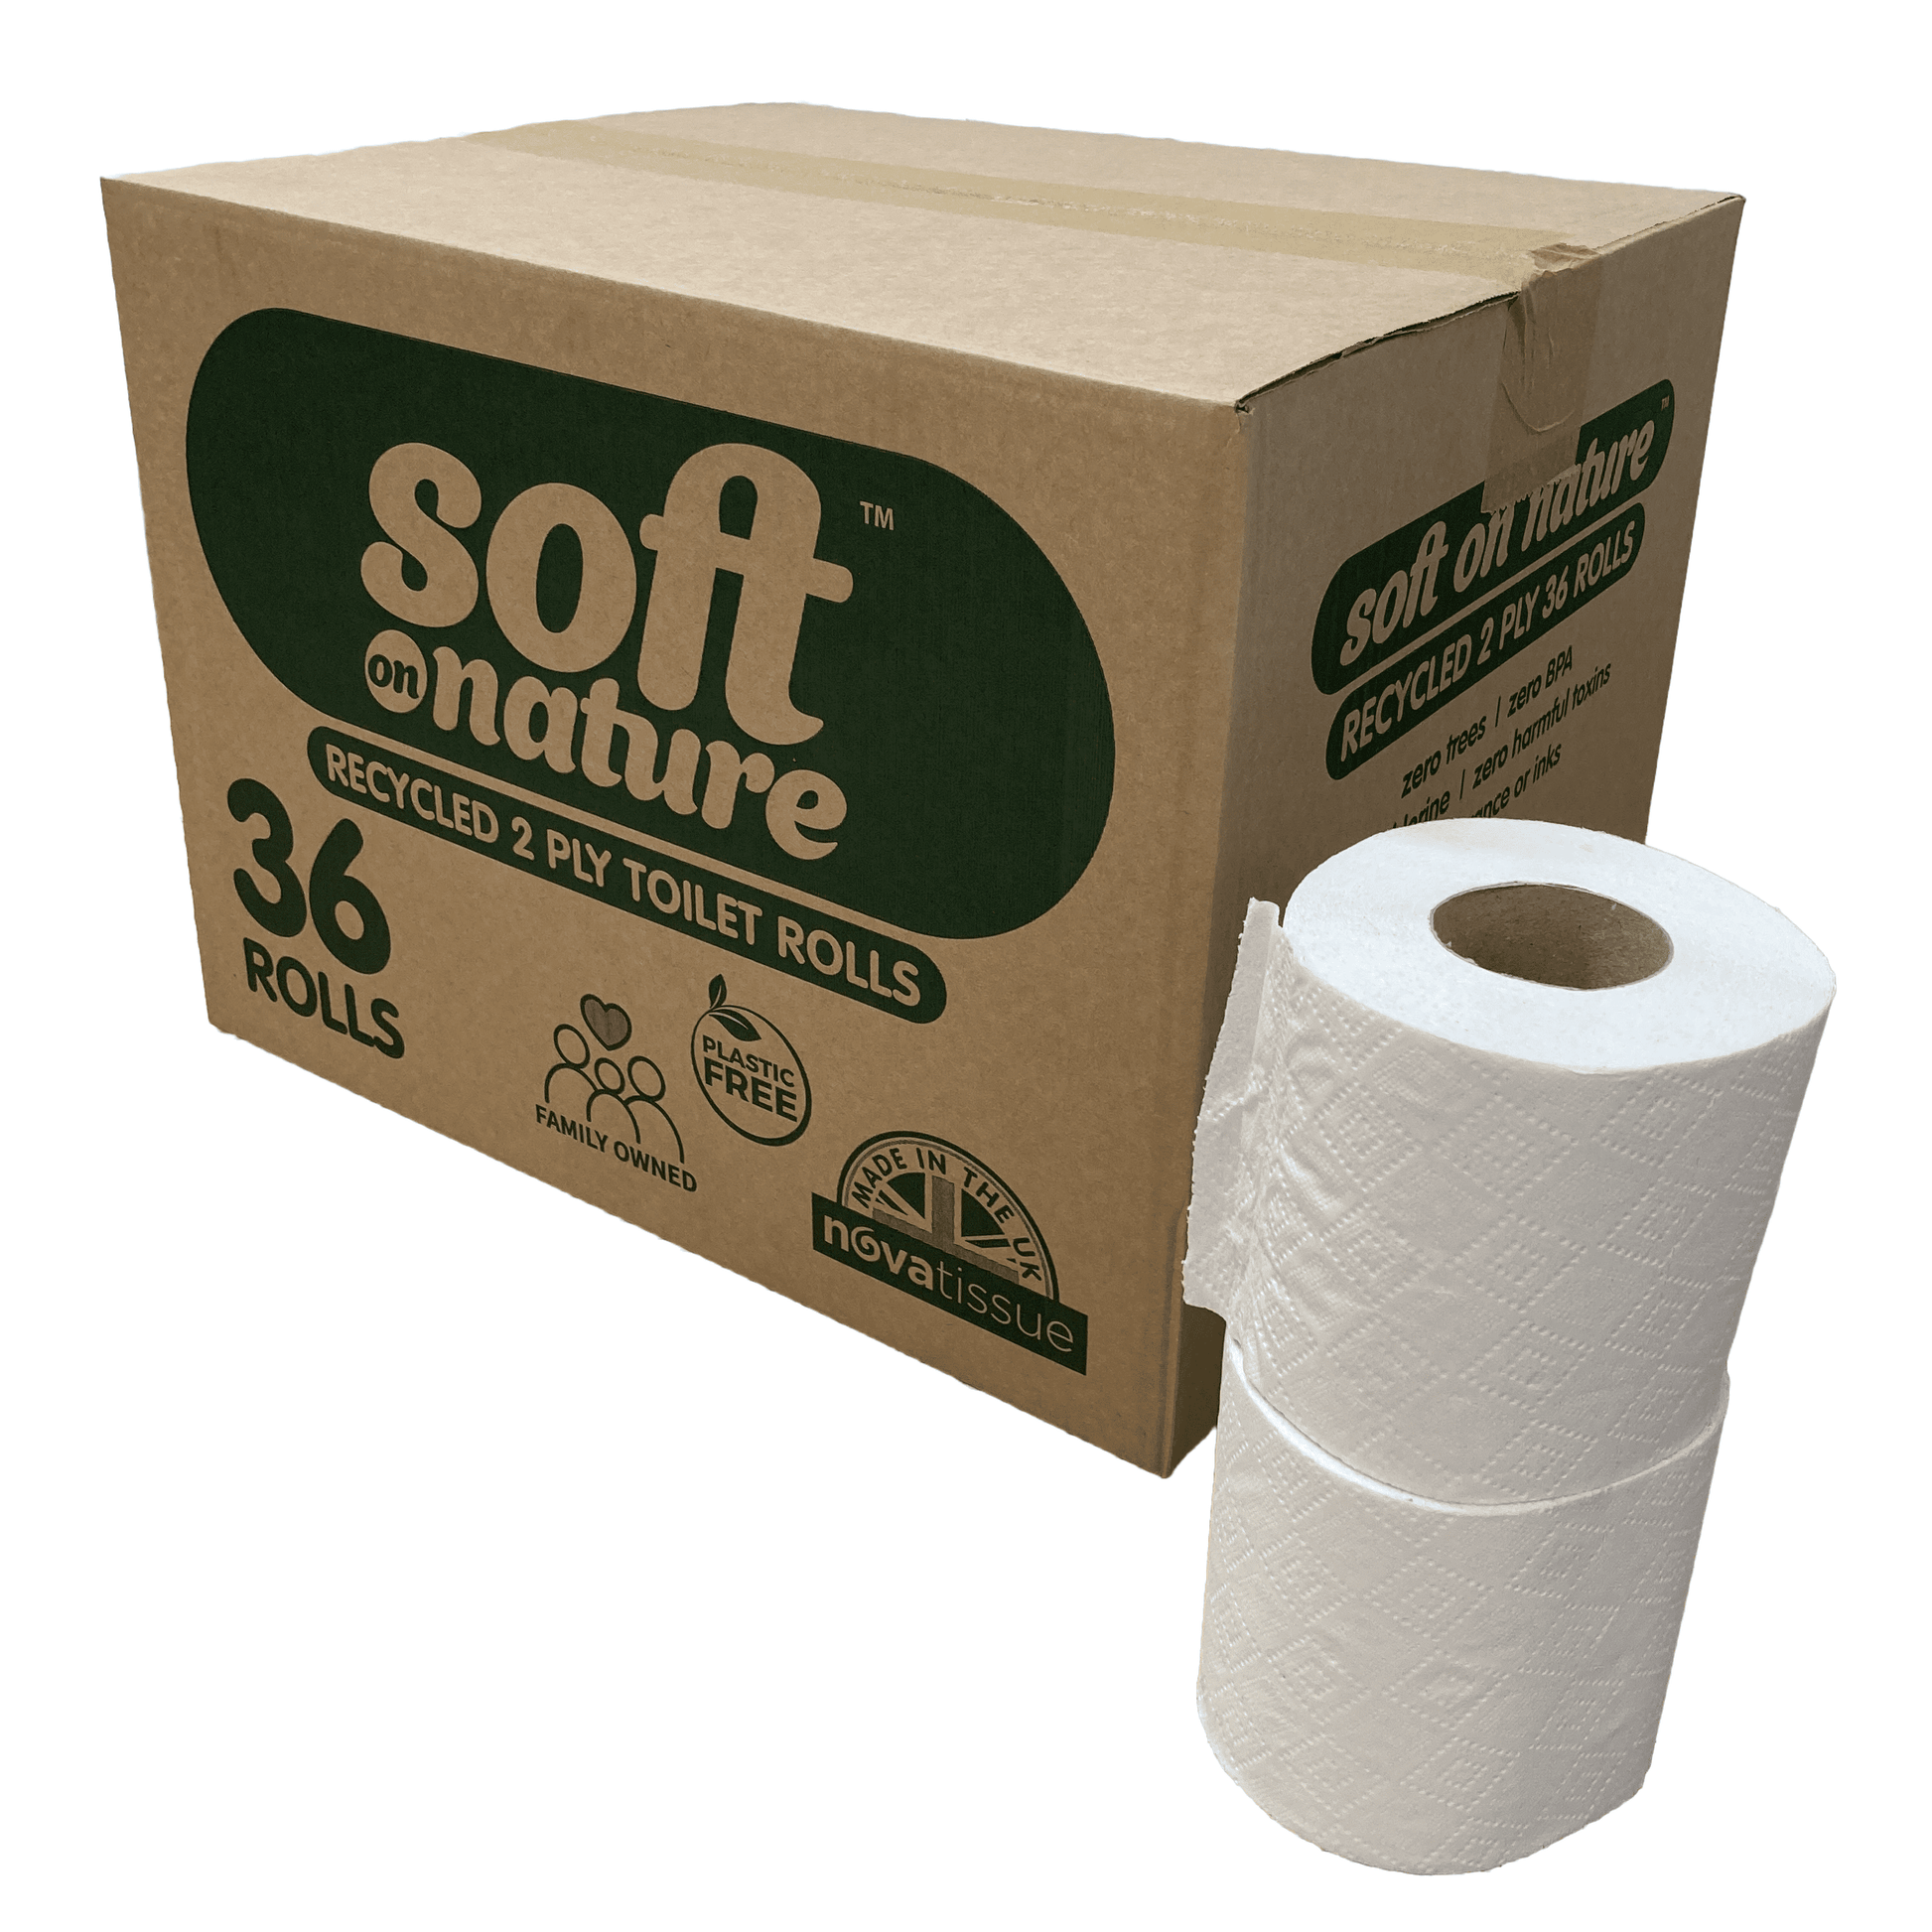 Box Toilet Paper x 36 Nova Tissue